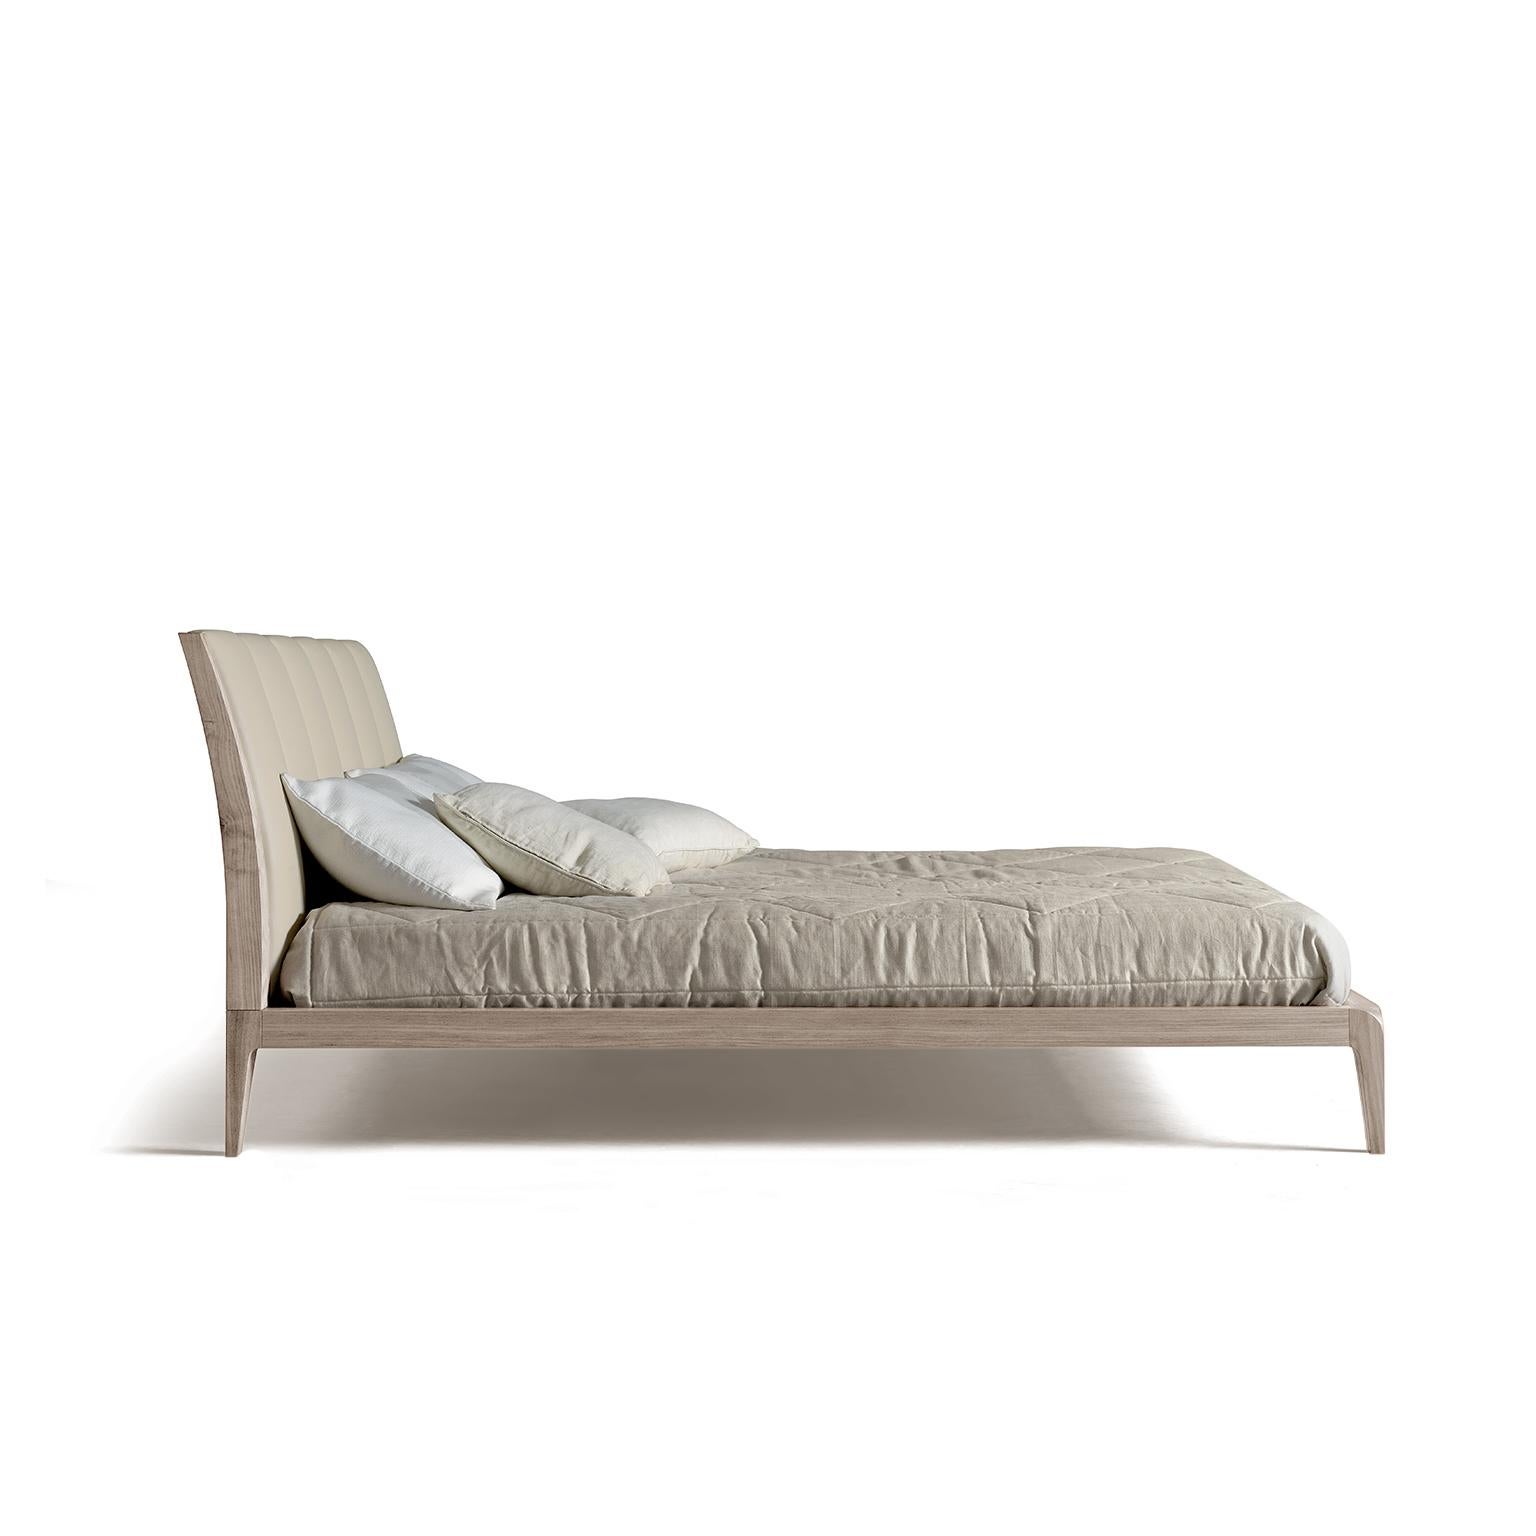 Ce lit bien proportionné est doté d'une tête de lit rembourrée et ornée de surpiqûres verticales. Simple et élégant, le cadre est construit en noyer massif huilé, une pièce intemporelle qui allie le design contemporain à la haute qualité de